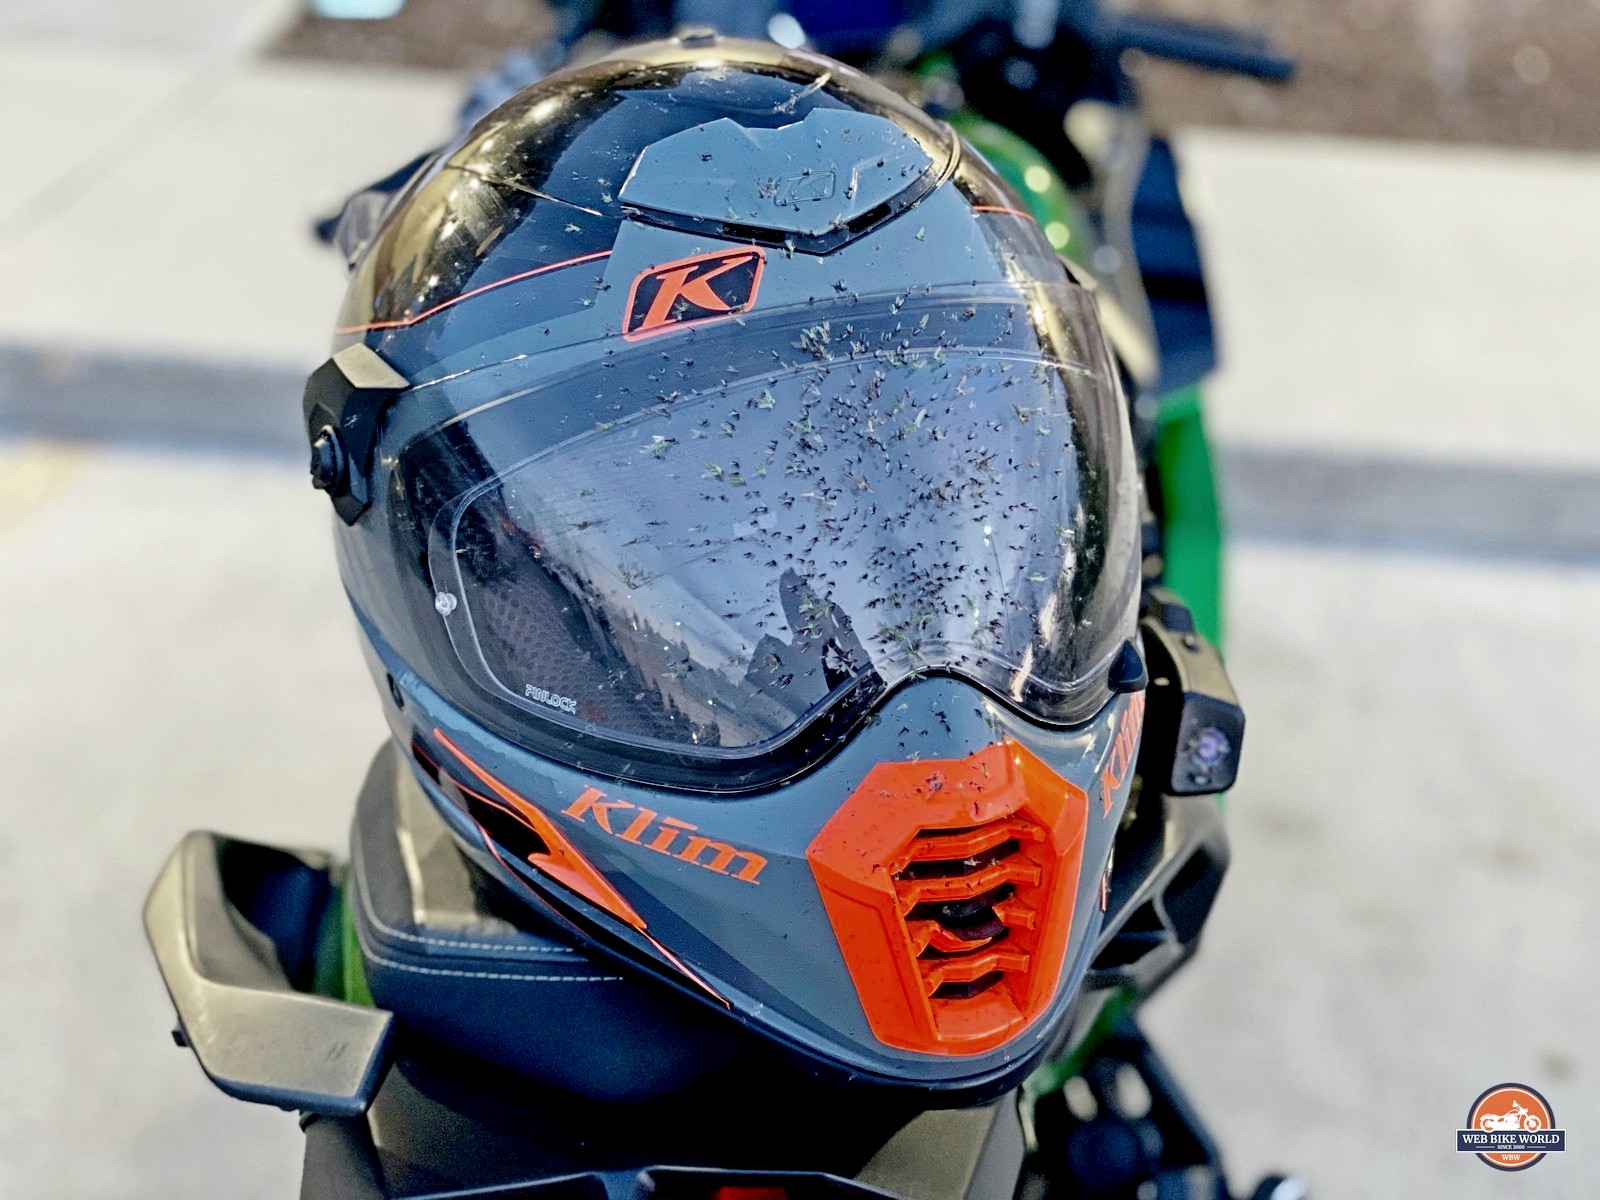 Awesome Motorcycle Helmet Face Masks - webBikeWorld